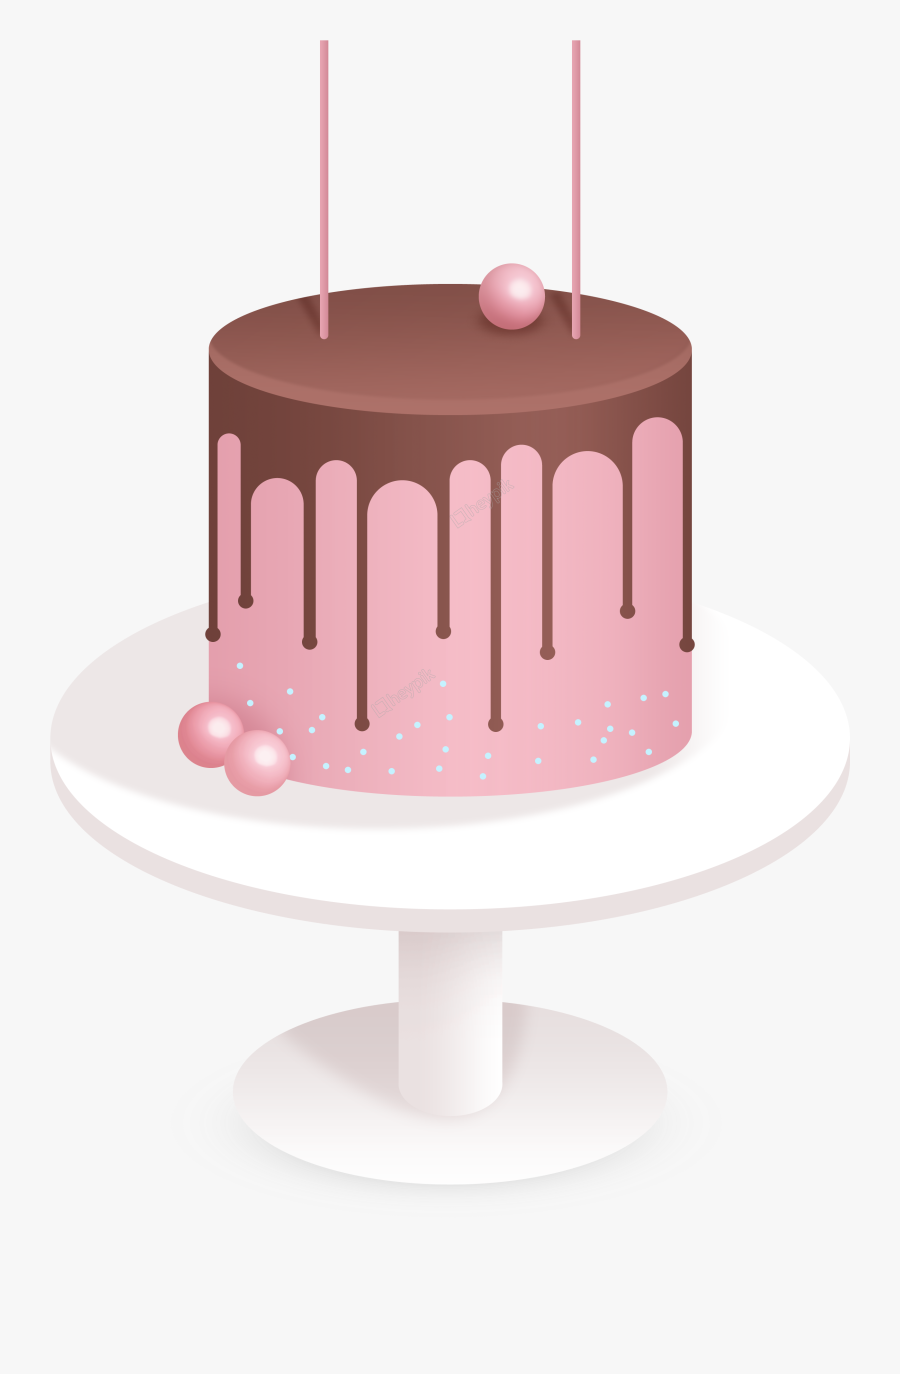 Drawn Cake Basic Cake - Draw Cake Pink, Transparent Clipart